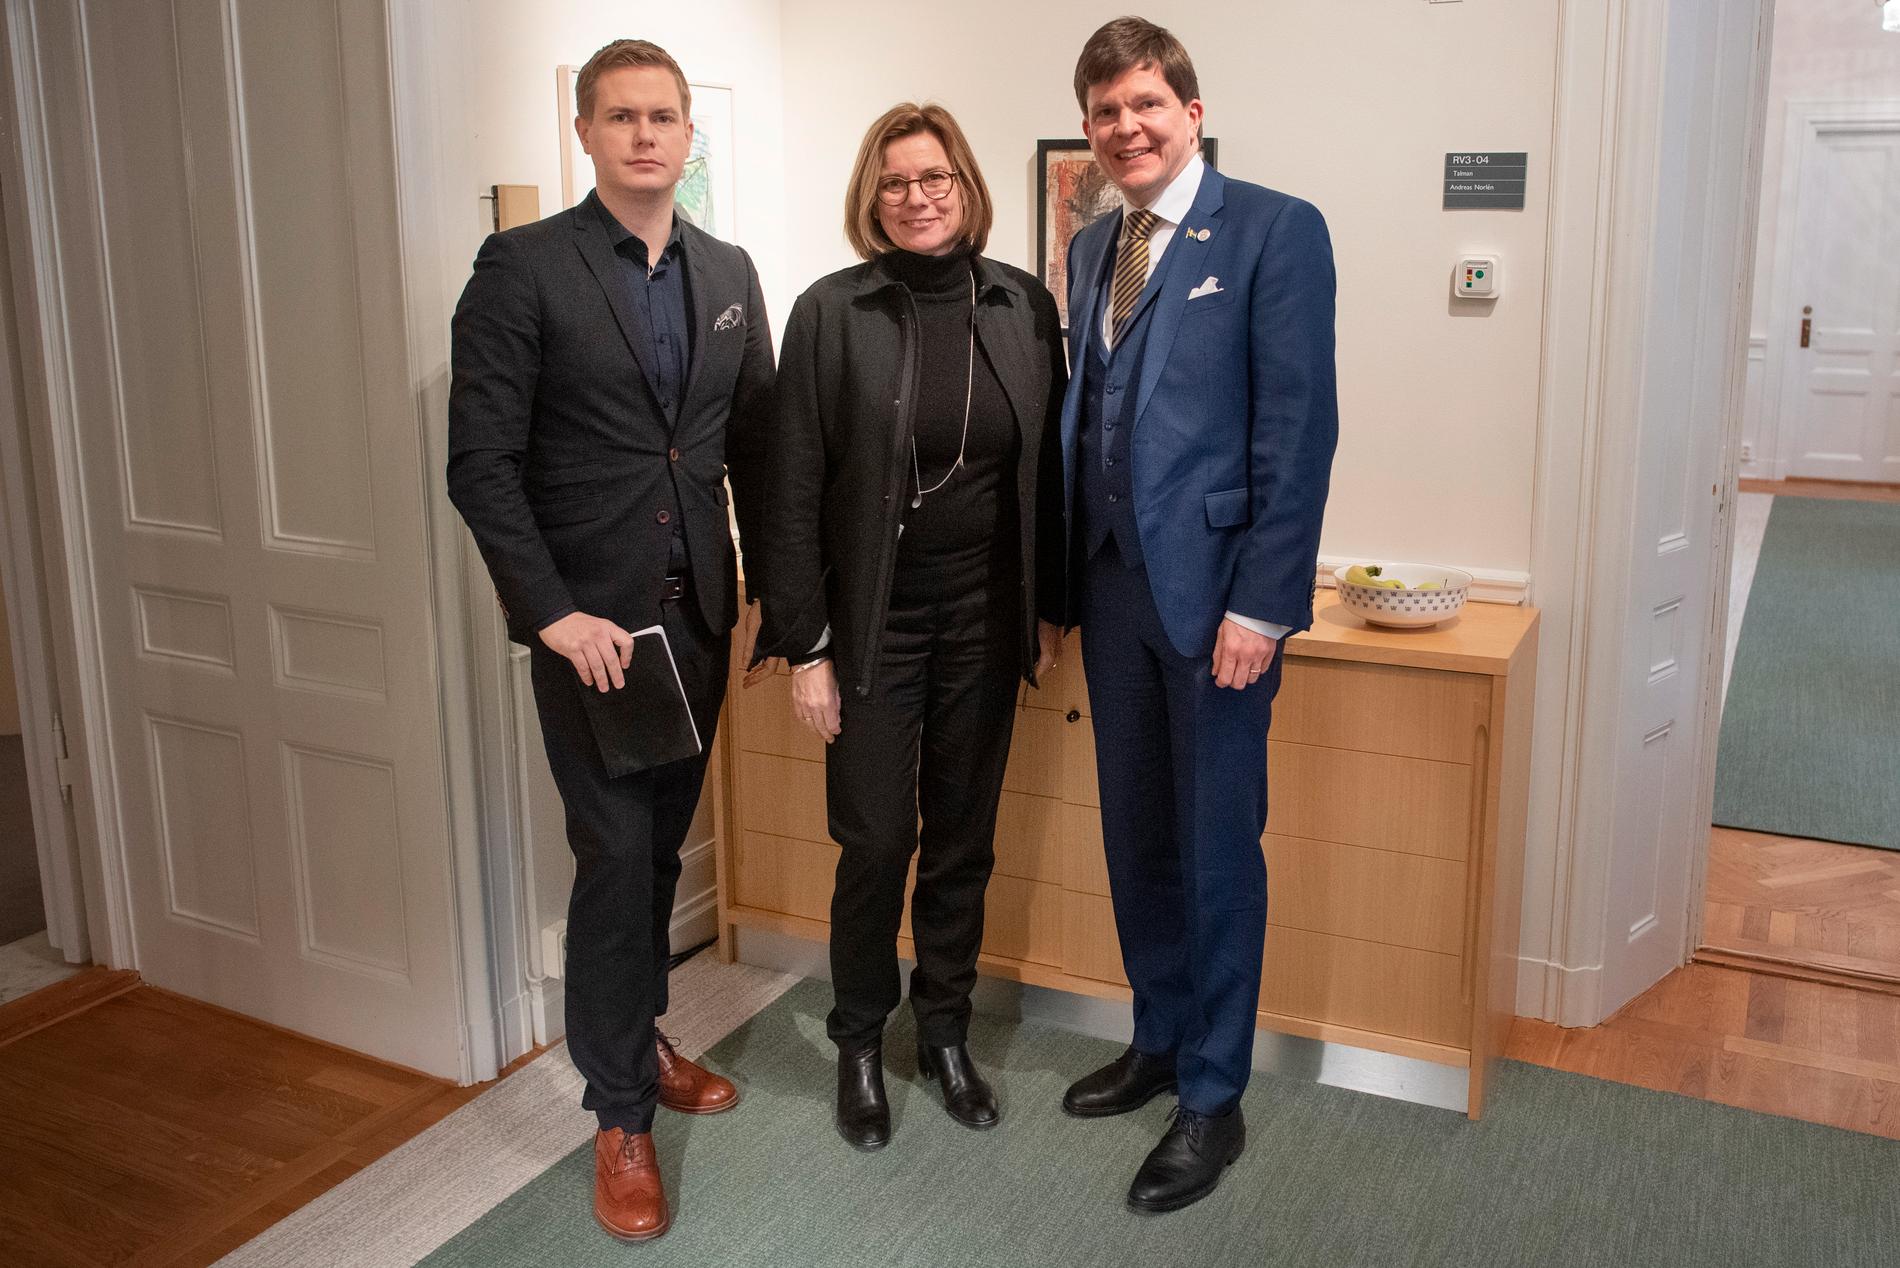 Miljöpartiets språkrör Gustav Fridolin och Isabella Lövin träffar talman Andreas Norlén